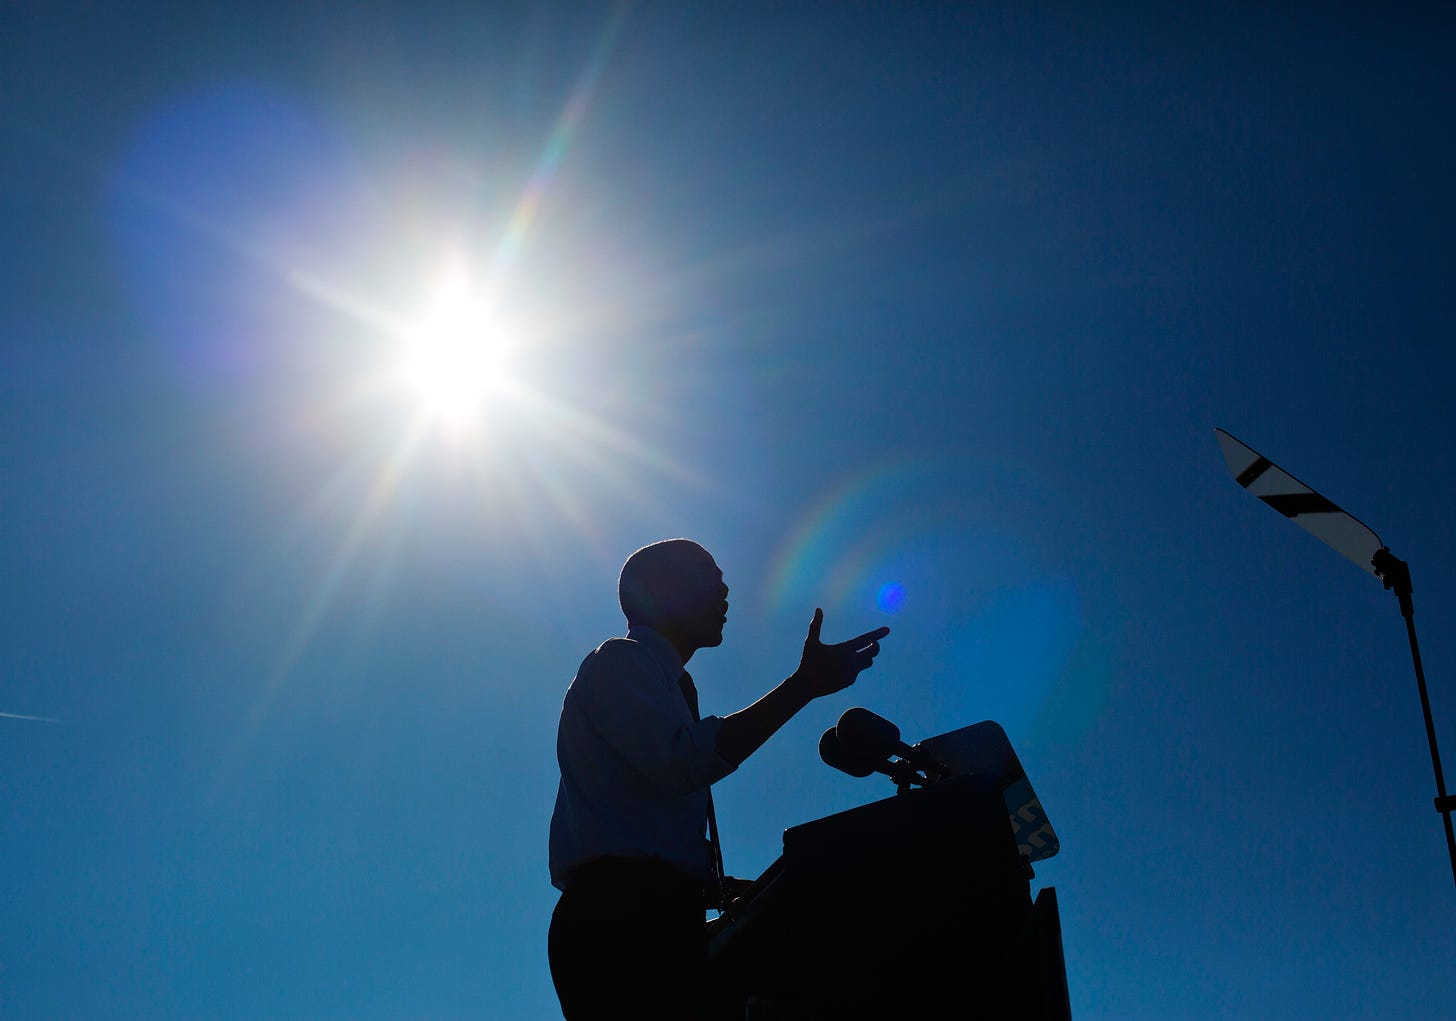 Inauguration: Barack Obama Should Now Focus on Black Lives | Time